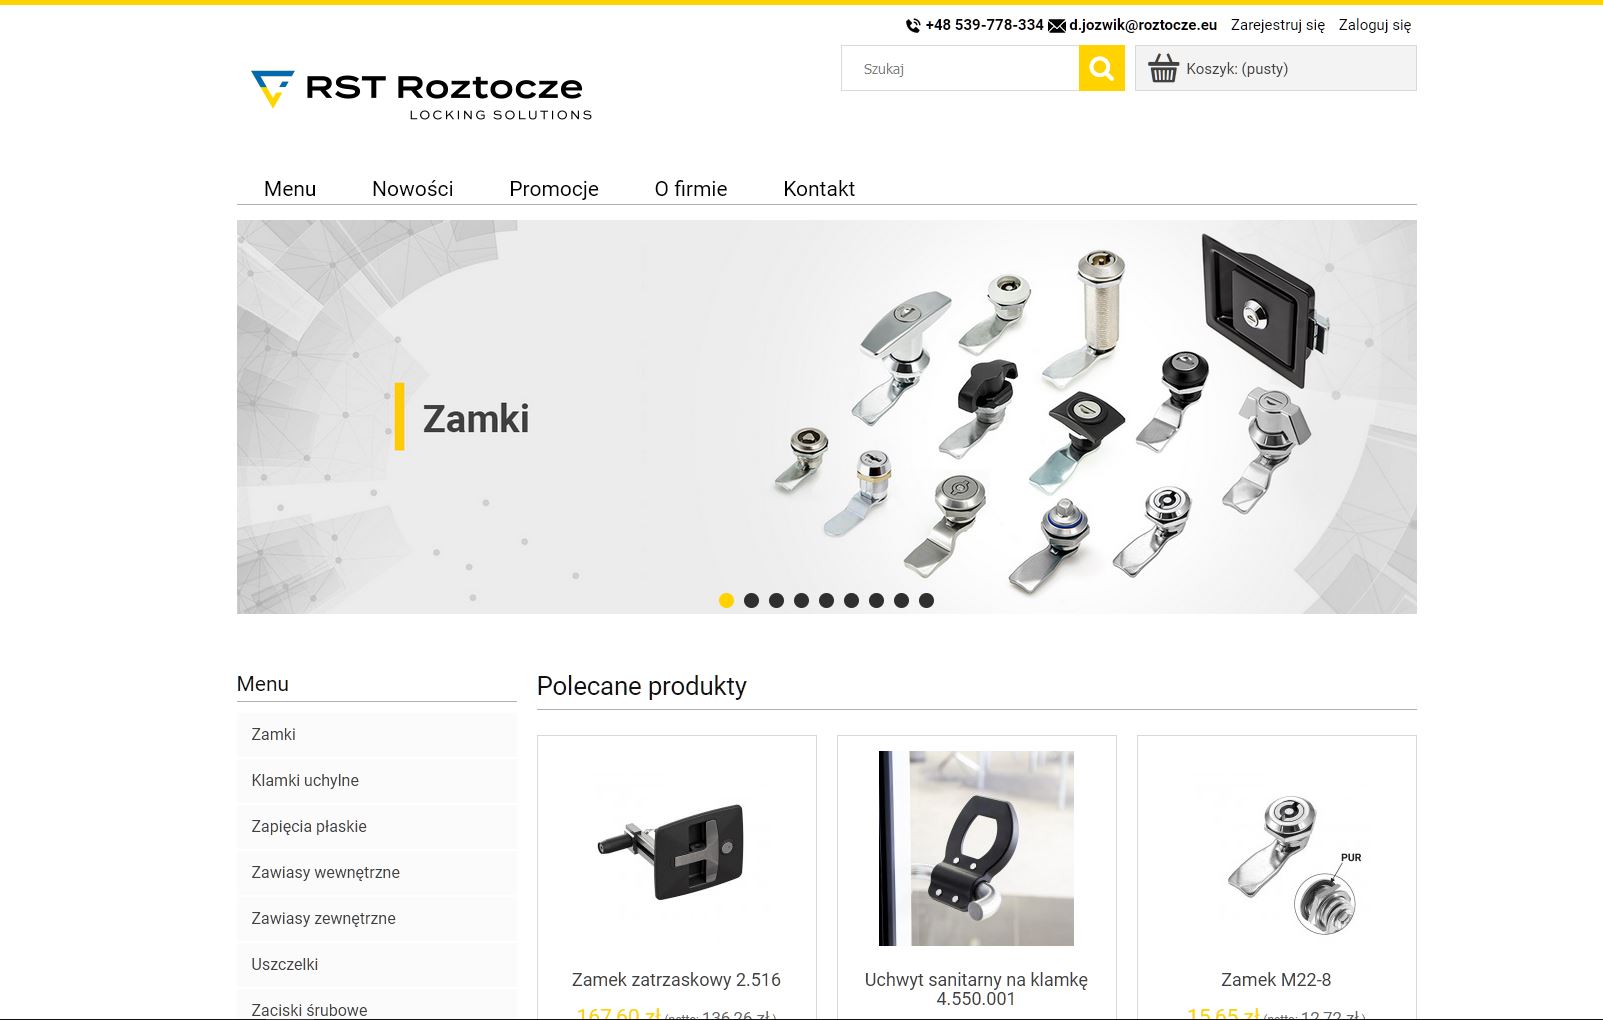 RST Roztocze - sklep detaliczno hurtowy artykułów przemysłowych - systemy zamykania, zamki do drzwi, zawiasy, uszczelki